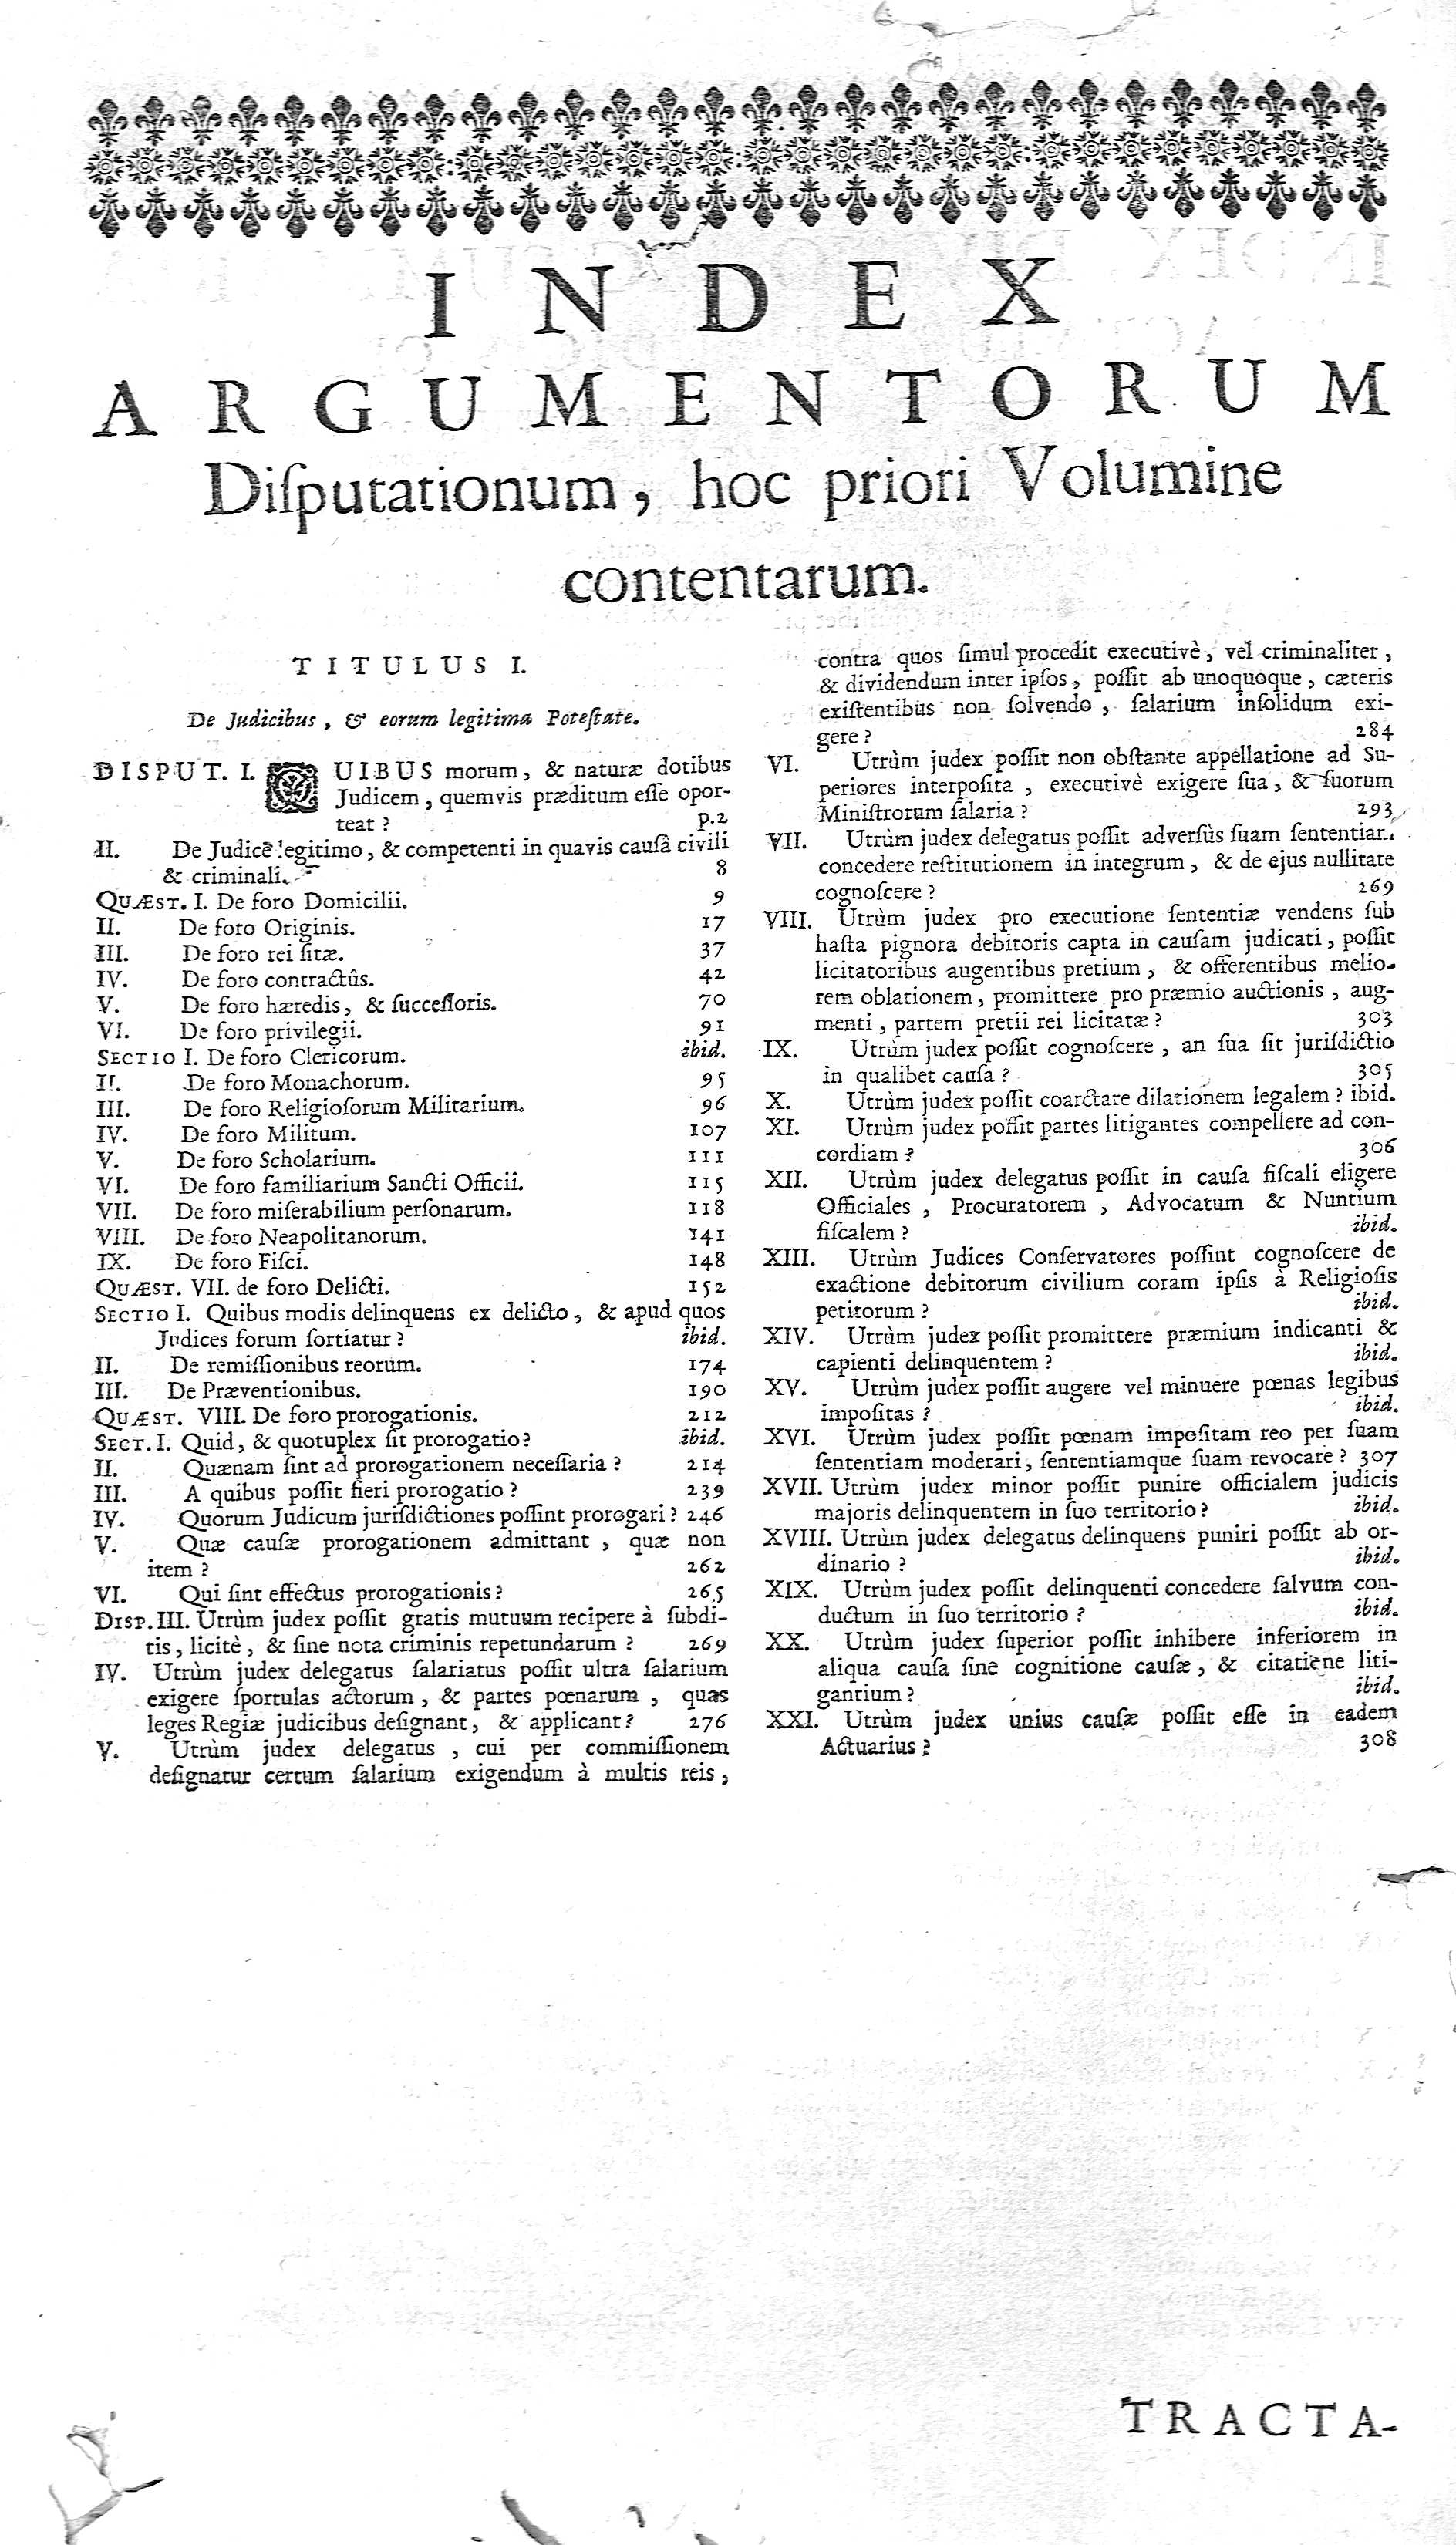 Index Argumentorum Disputationum,...